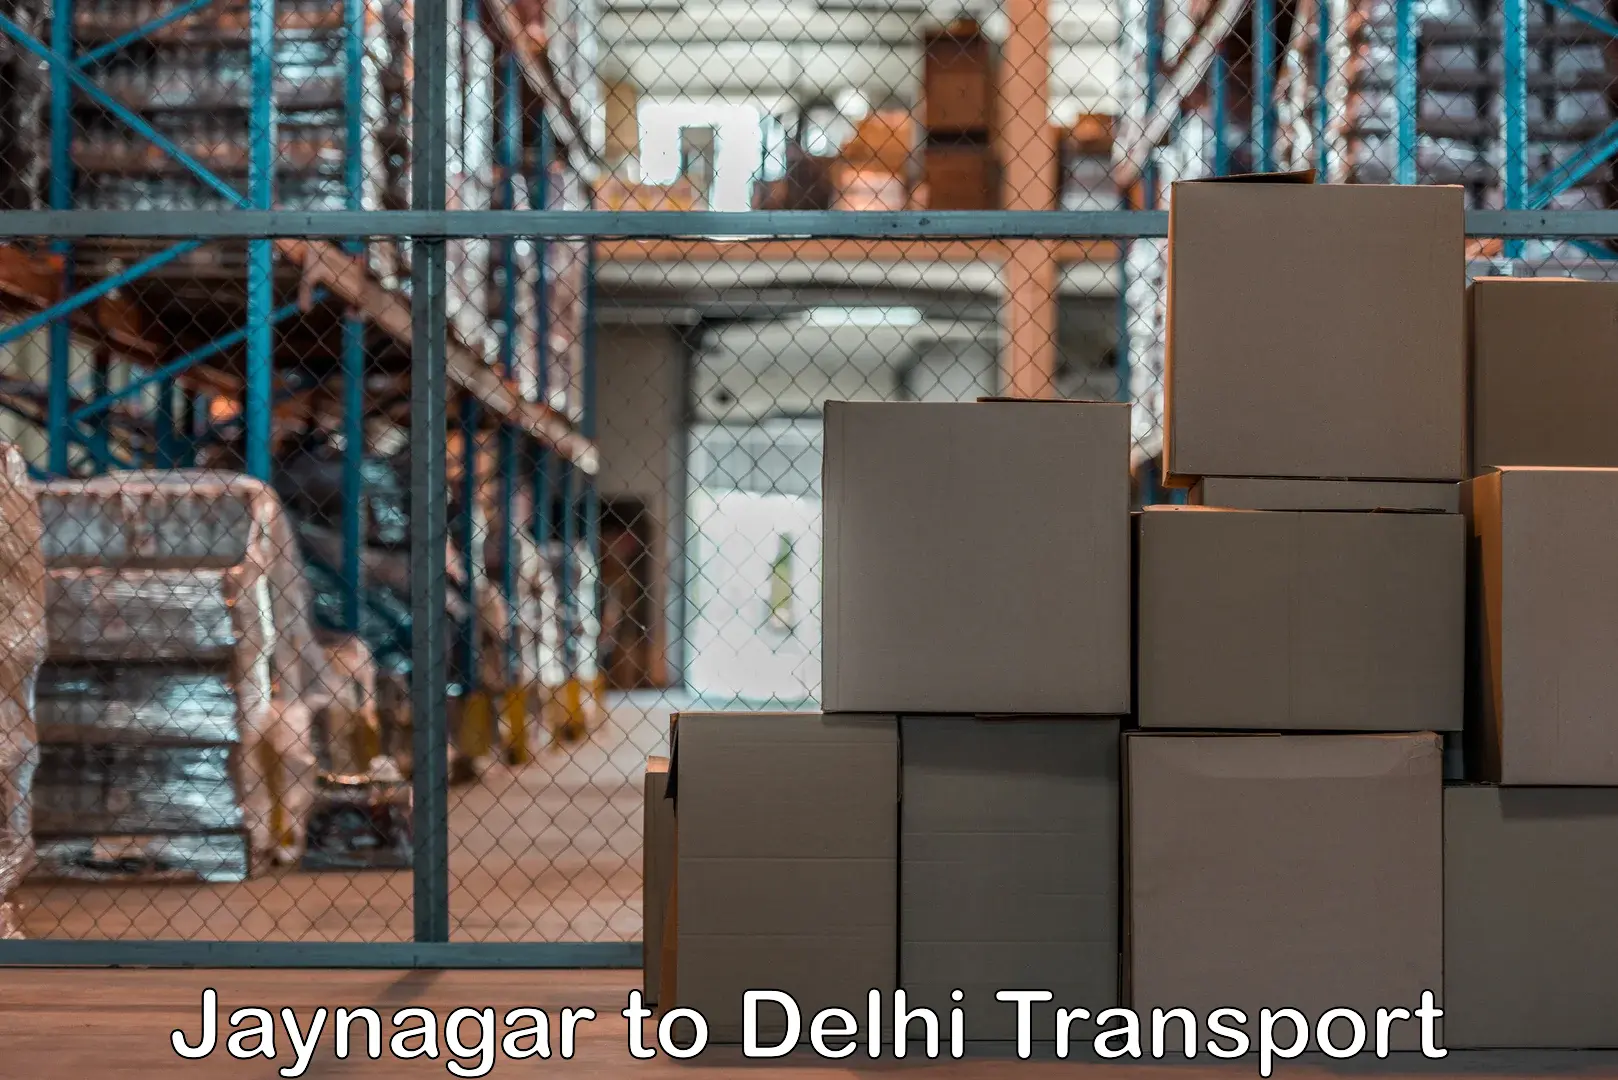 Container transportation services Jaynagar to Delhi